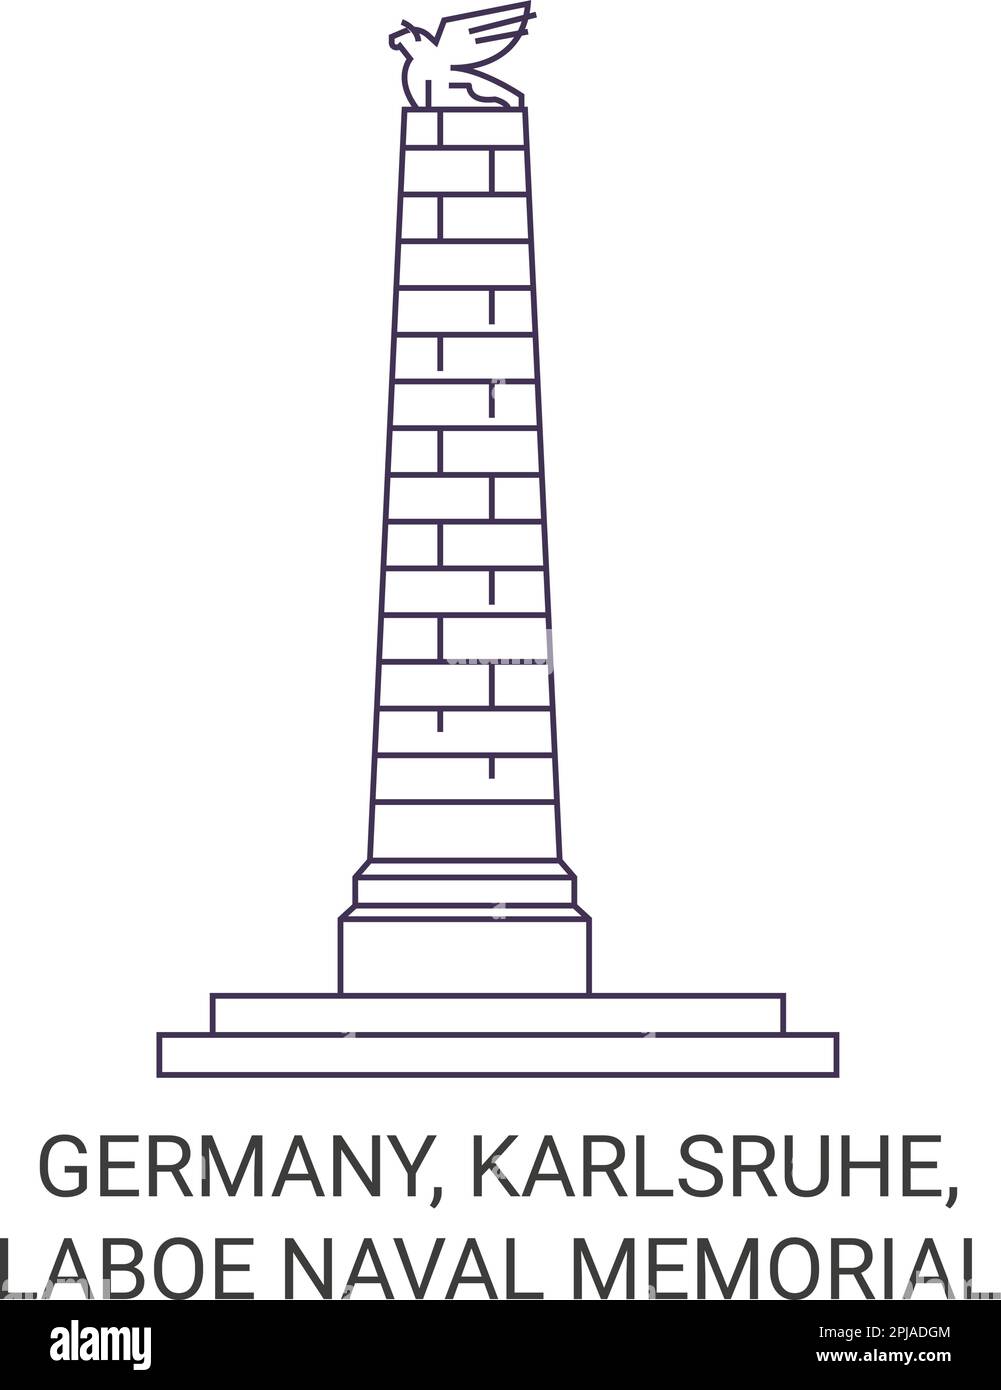 Germany, Karlsruhe, Laboe Naval Memorial travel landmark vector illustration Stock Vector